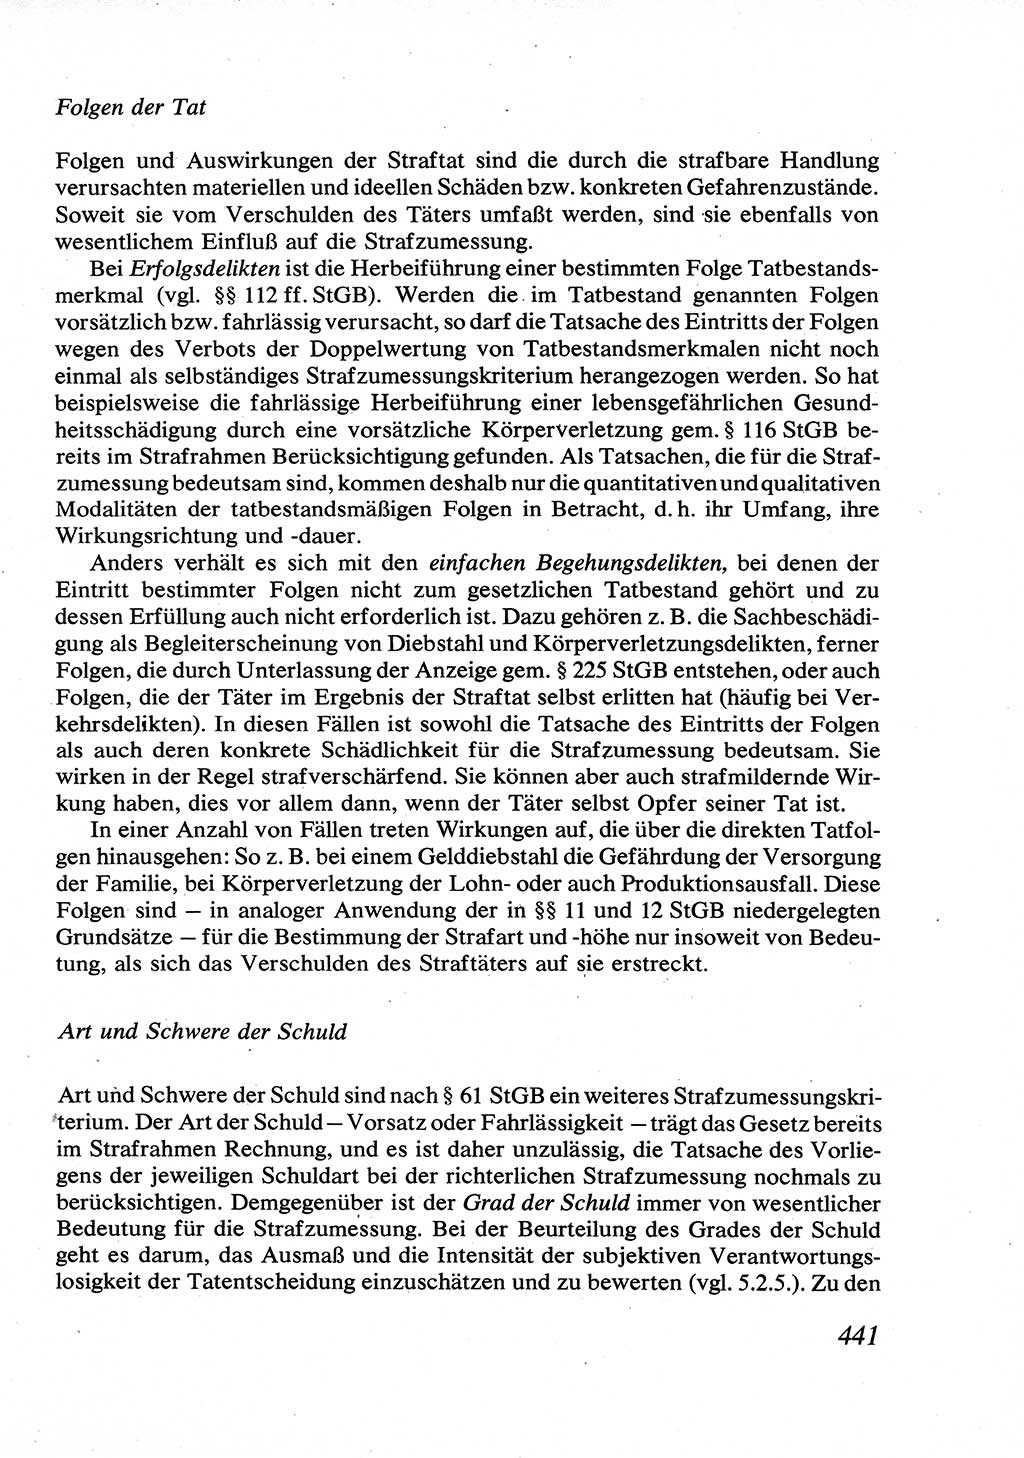 Strafrecht [Deutsche Demokratische Republik (DDR)], Allgemeiner Teil, Lehrbuch 1976, Seite 441 (Strafr. DDR AT Lb. 1976, S. 441)